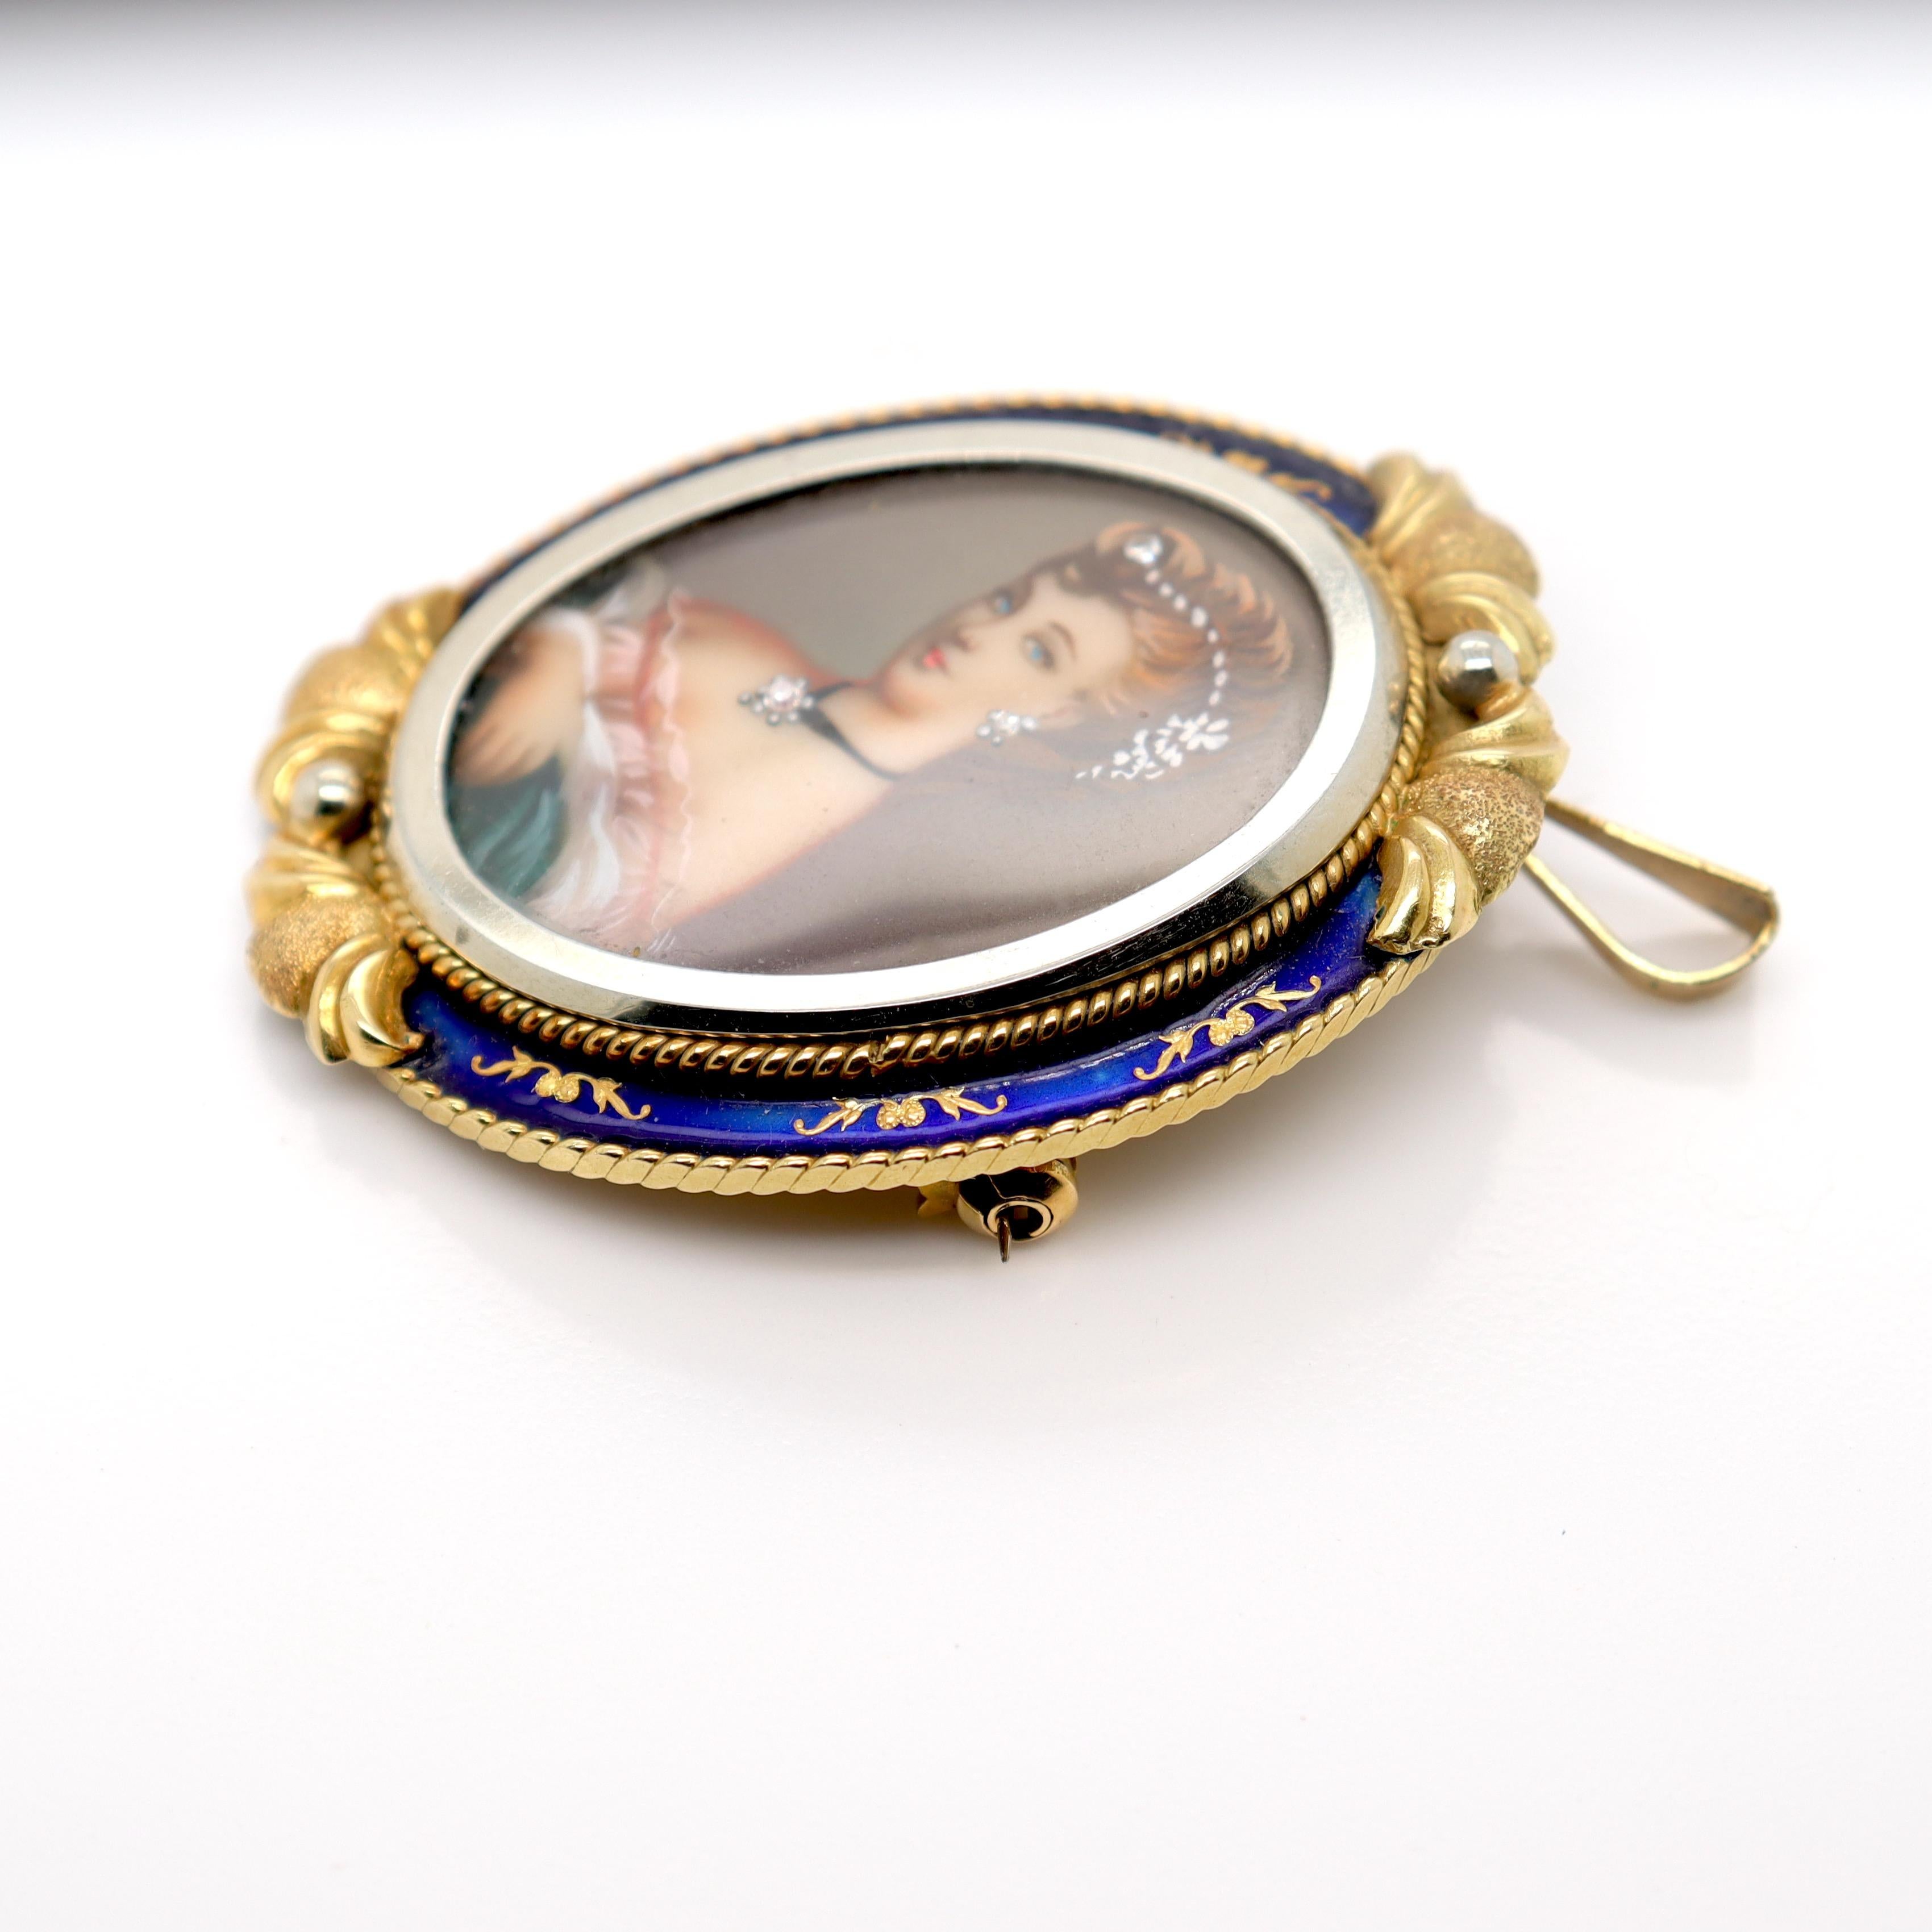 Vintage Corletto 18K Gold & Blue Enamel Portrait Miniature Brooch or Pendant For Sale 2